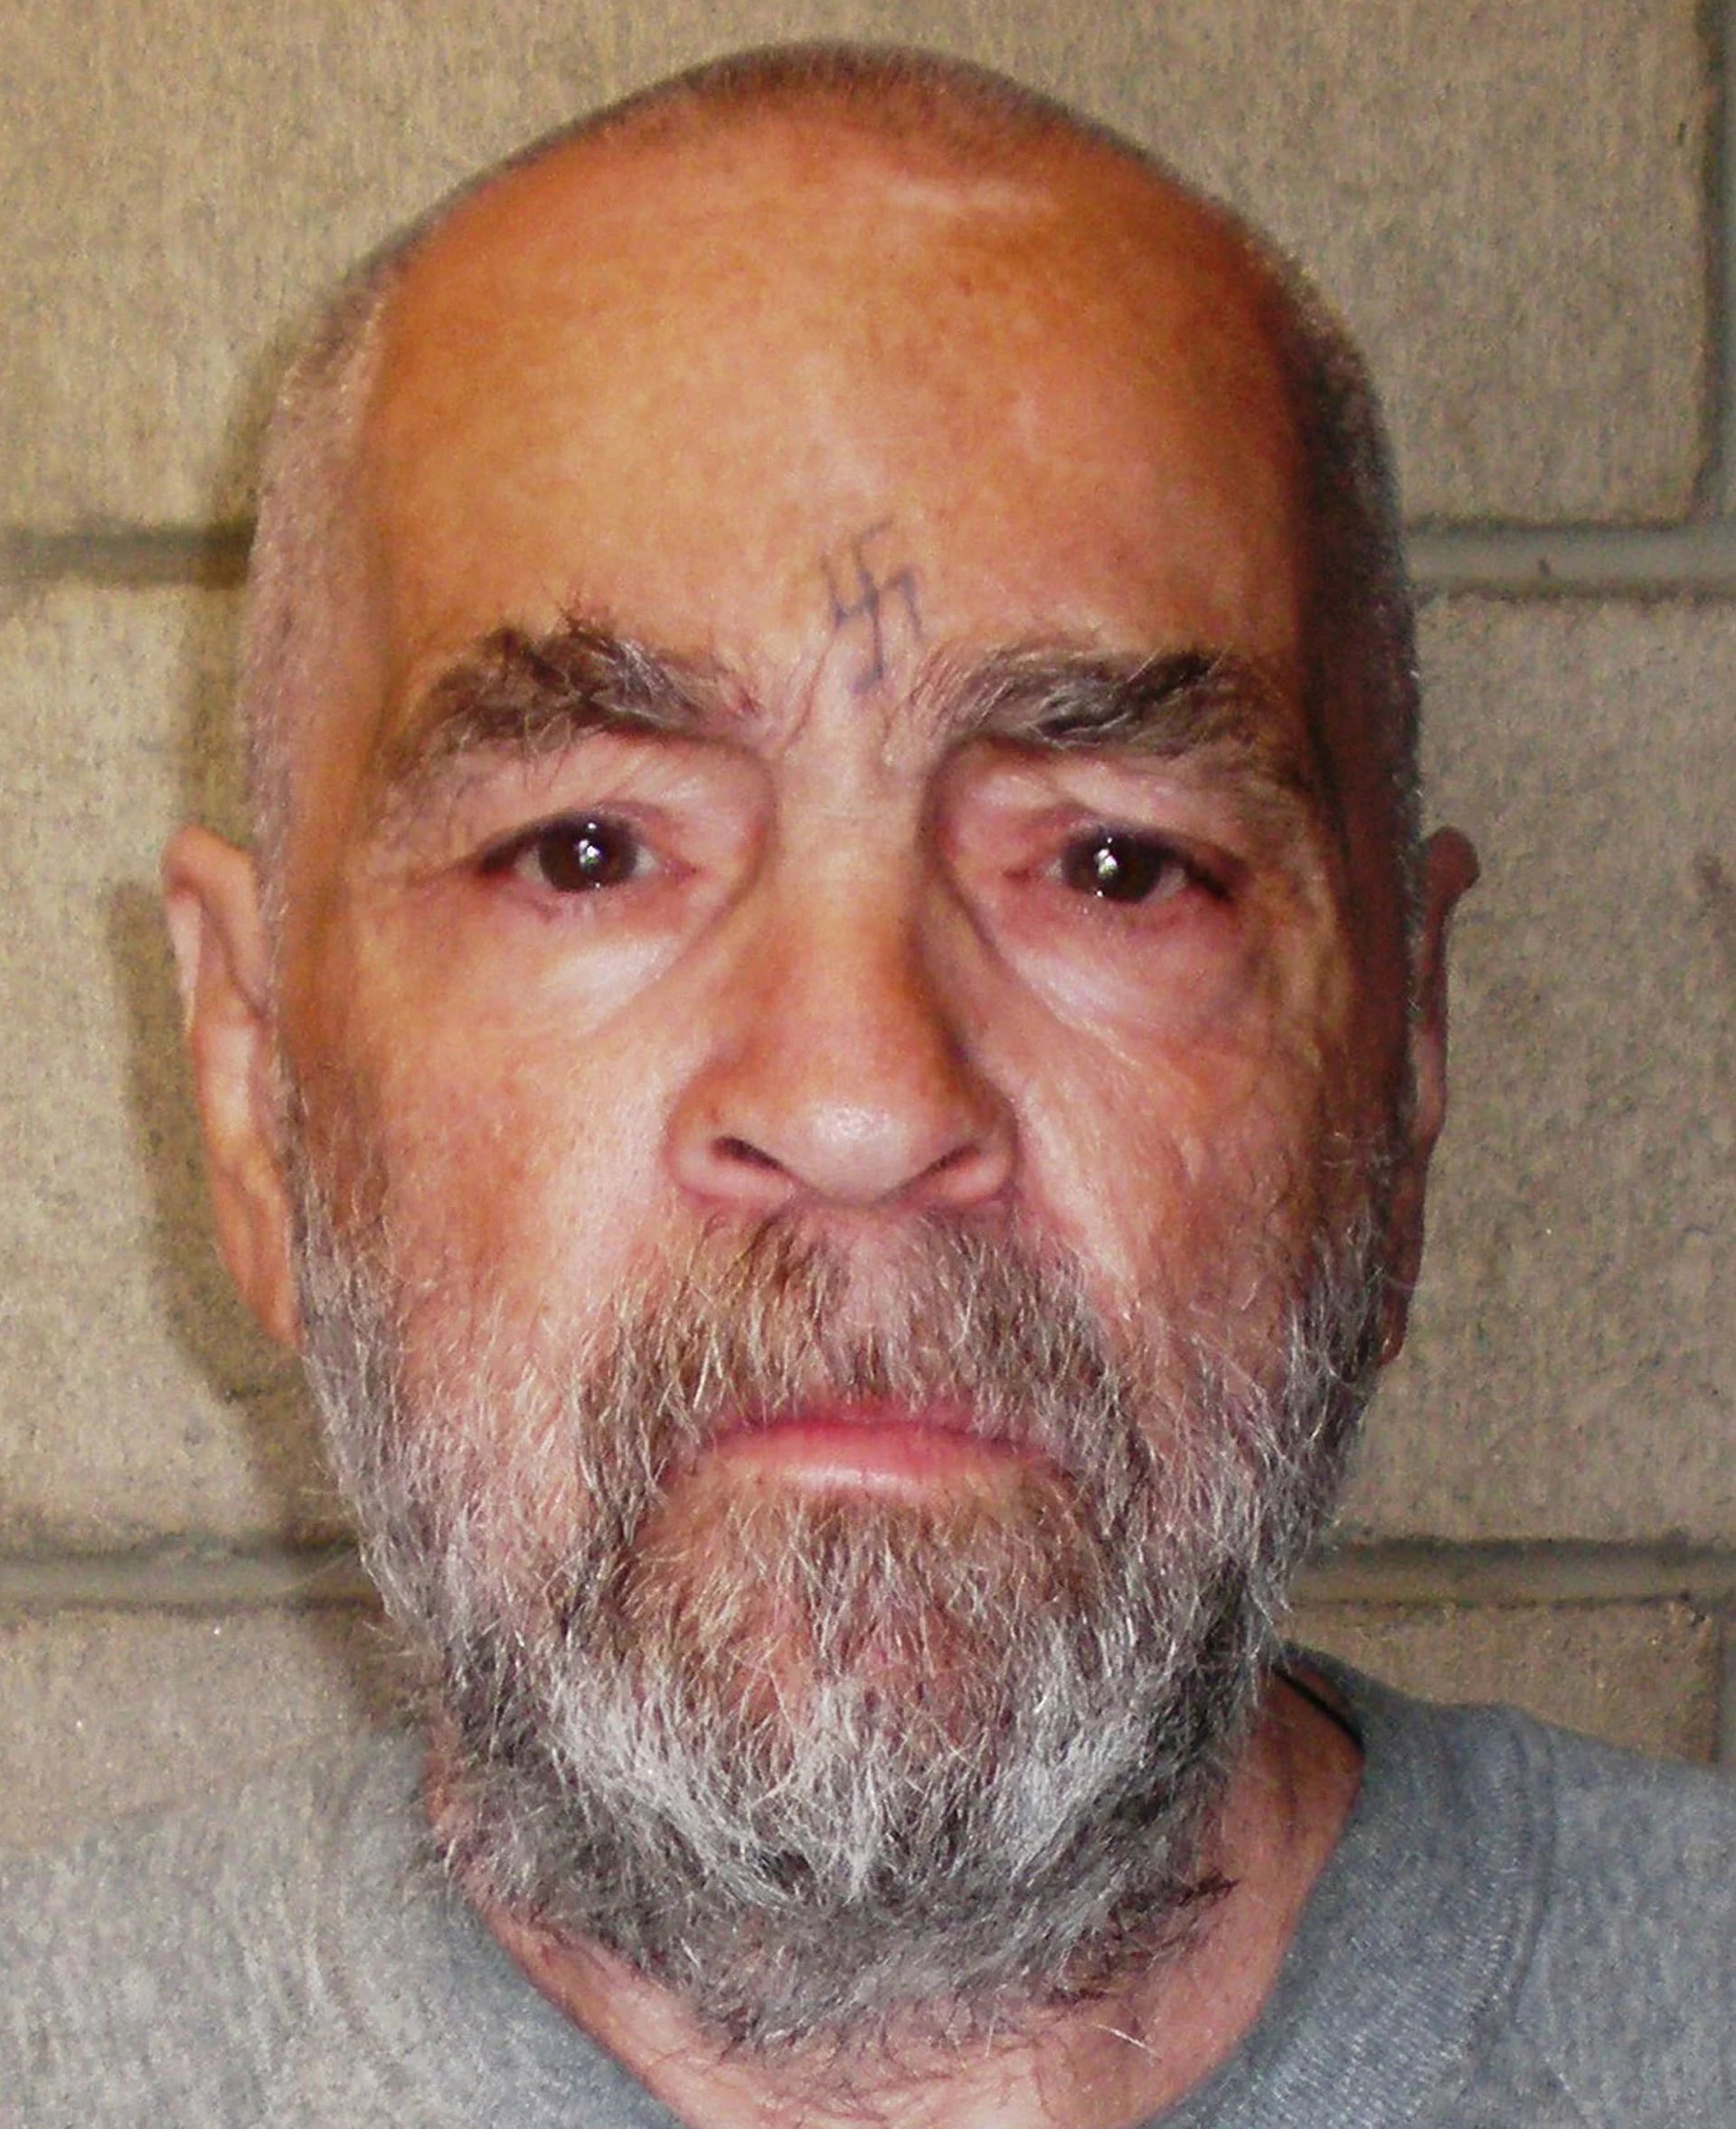 Charles Manson, entonces de 74 años, posa para una foto el 18 de marzo de 2009 en la Prisión Estatal de Corcoran, California. Manson estaba cumpliendo cadena perpetua por conspirar para asesinar a siete personas durante los asesinatos de la "familia Manson" en 1969 (Departamento de Correcciones y Rehabilitación de California a través de Getty Images)
